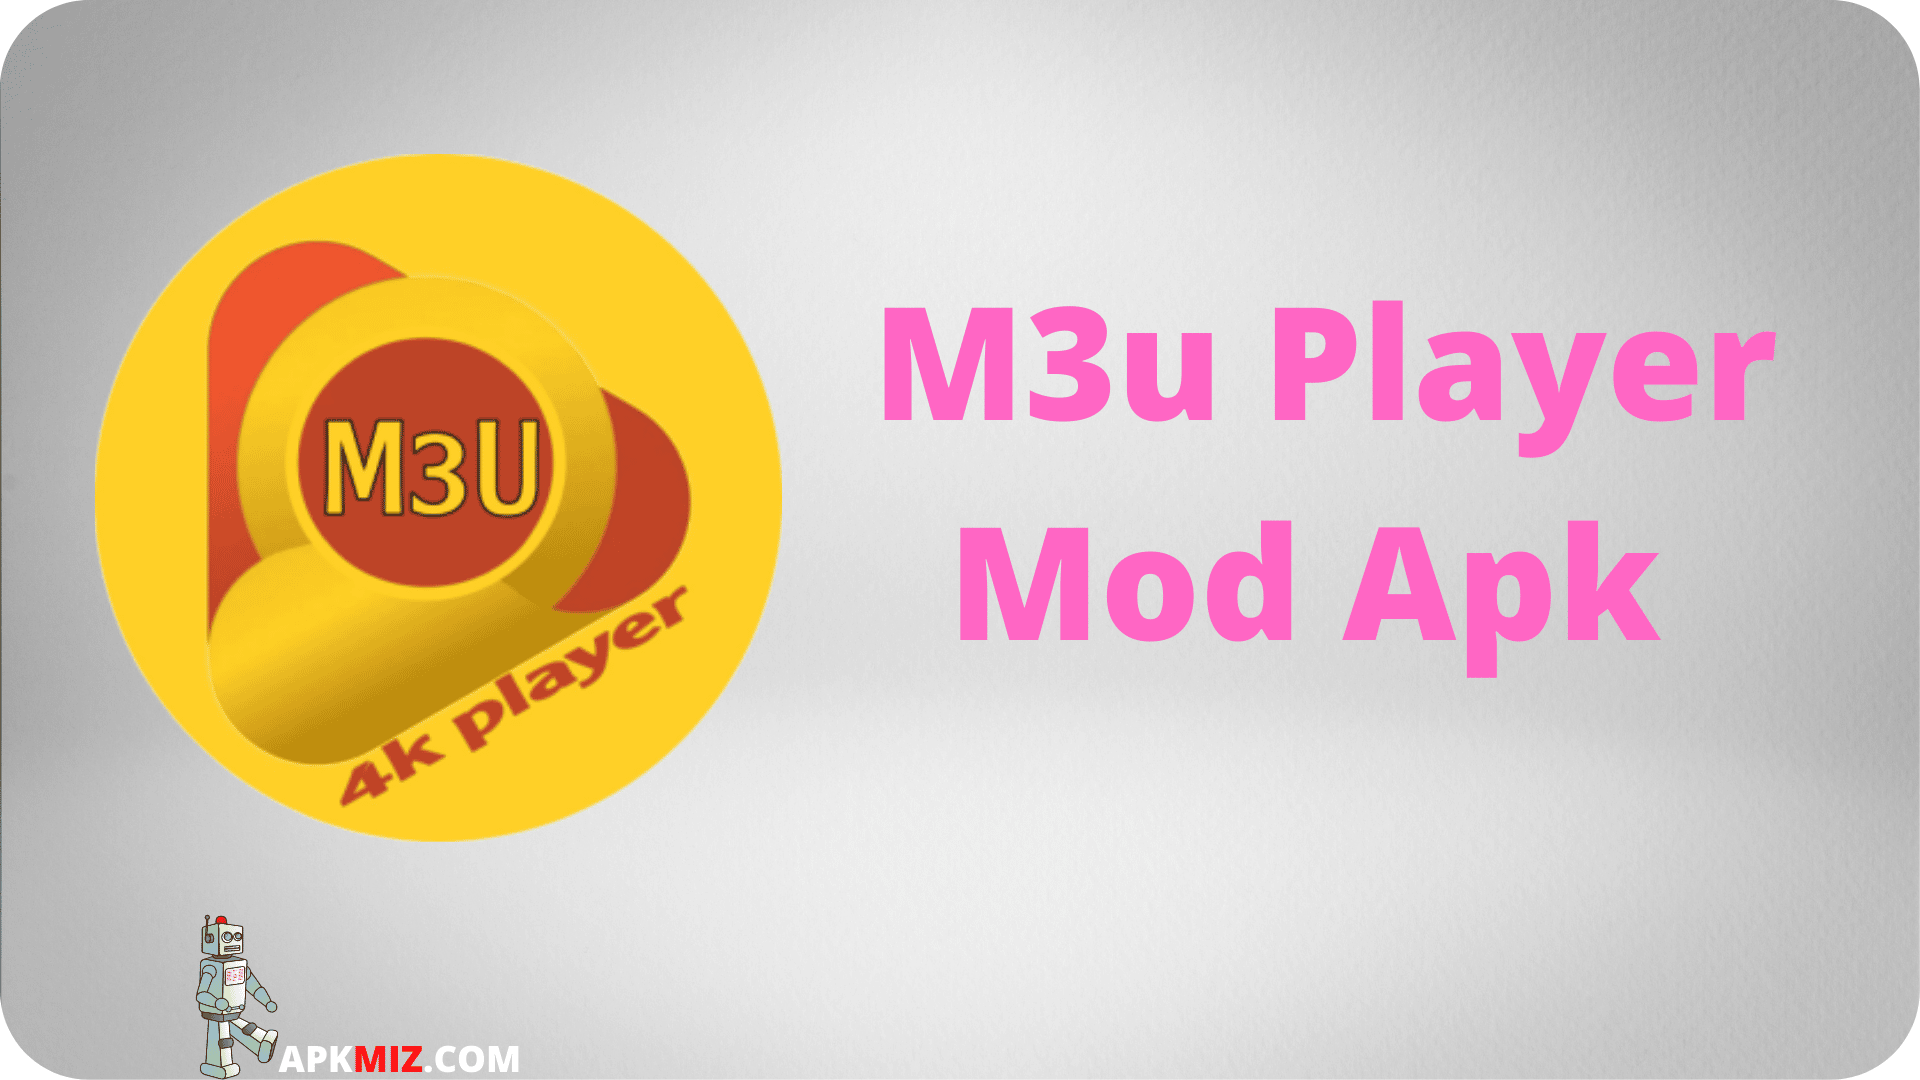 M3u Player Mod Apk